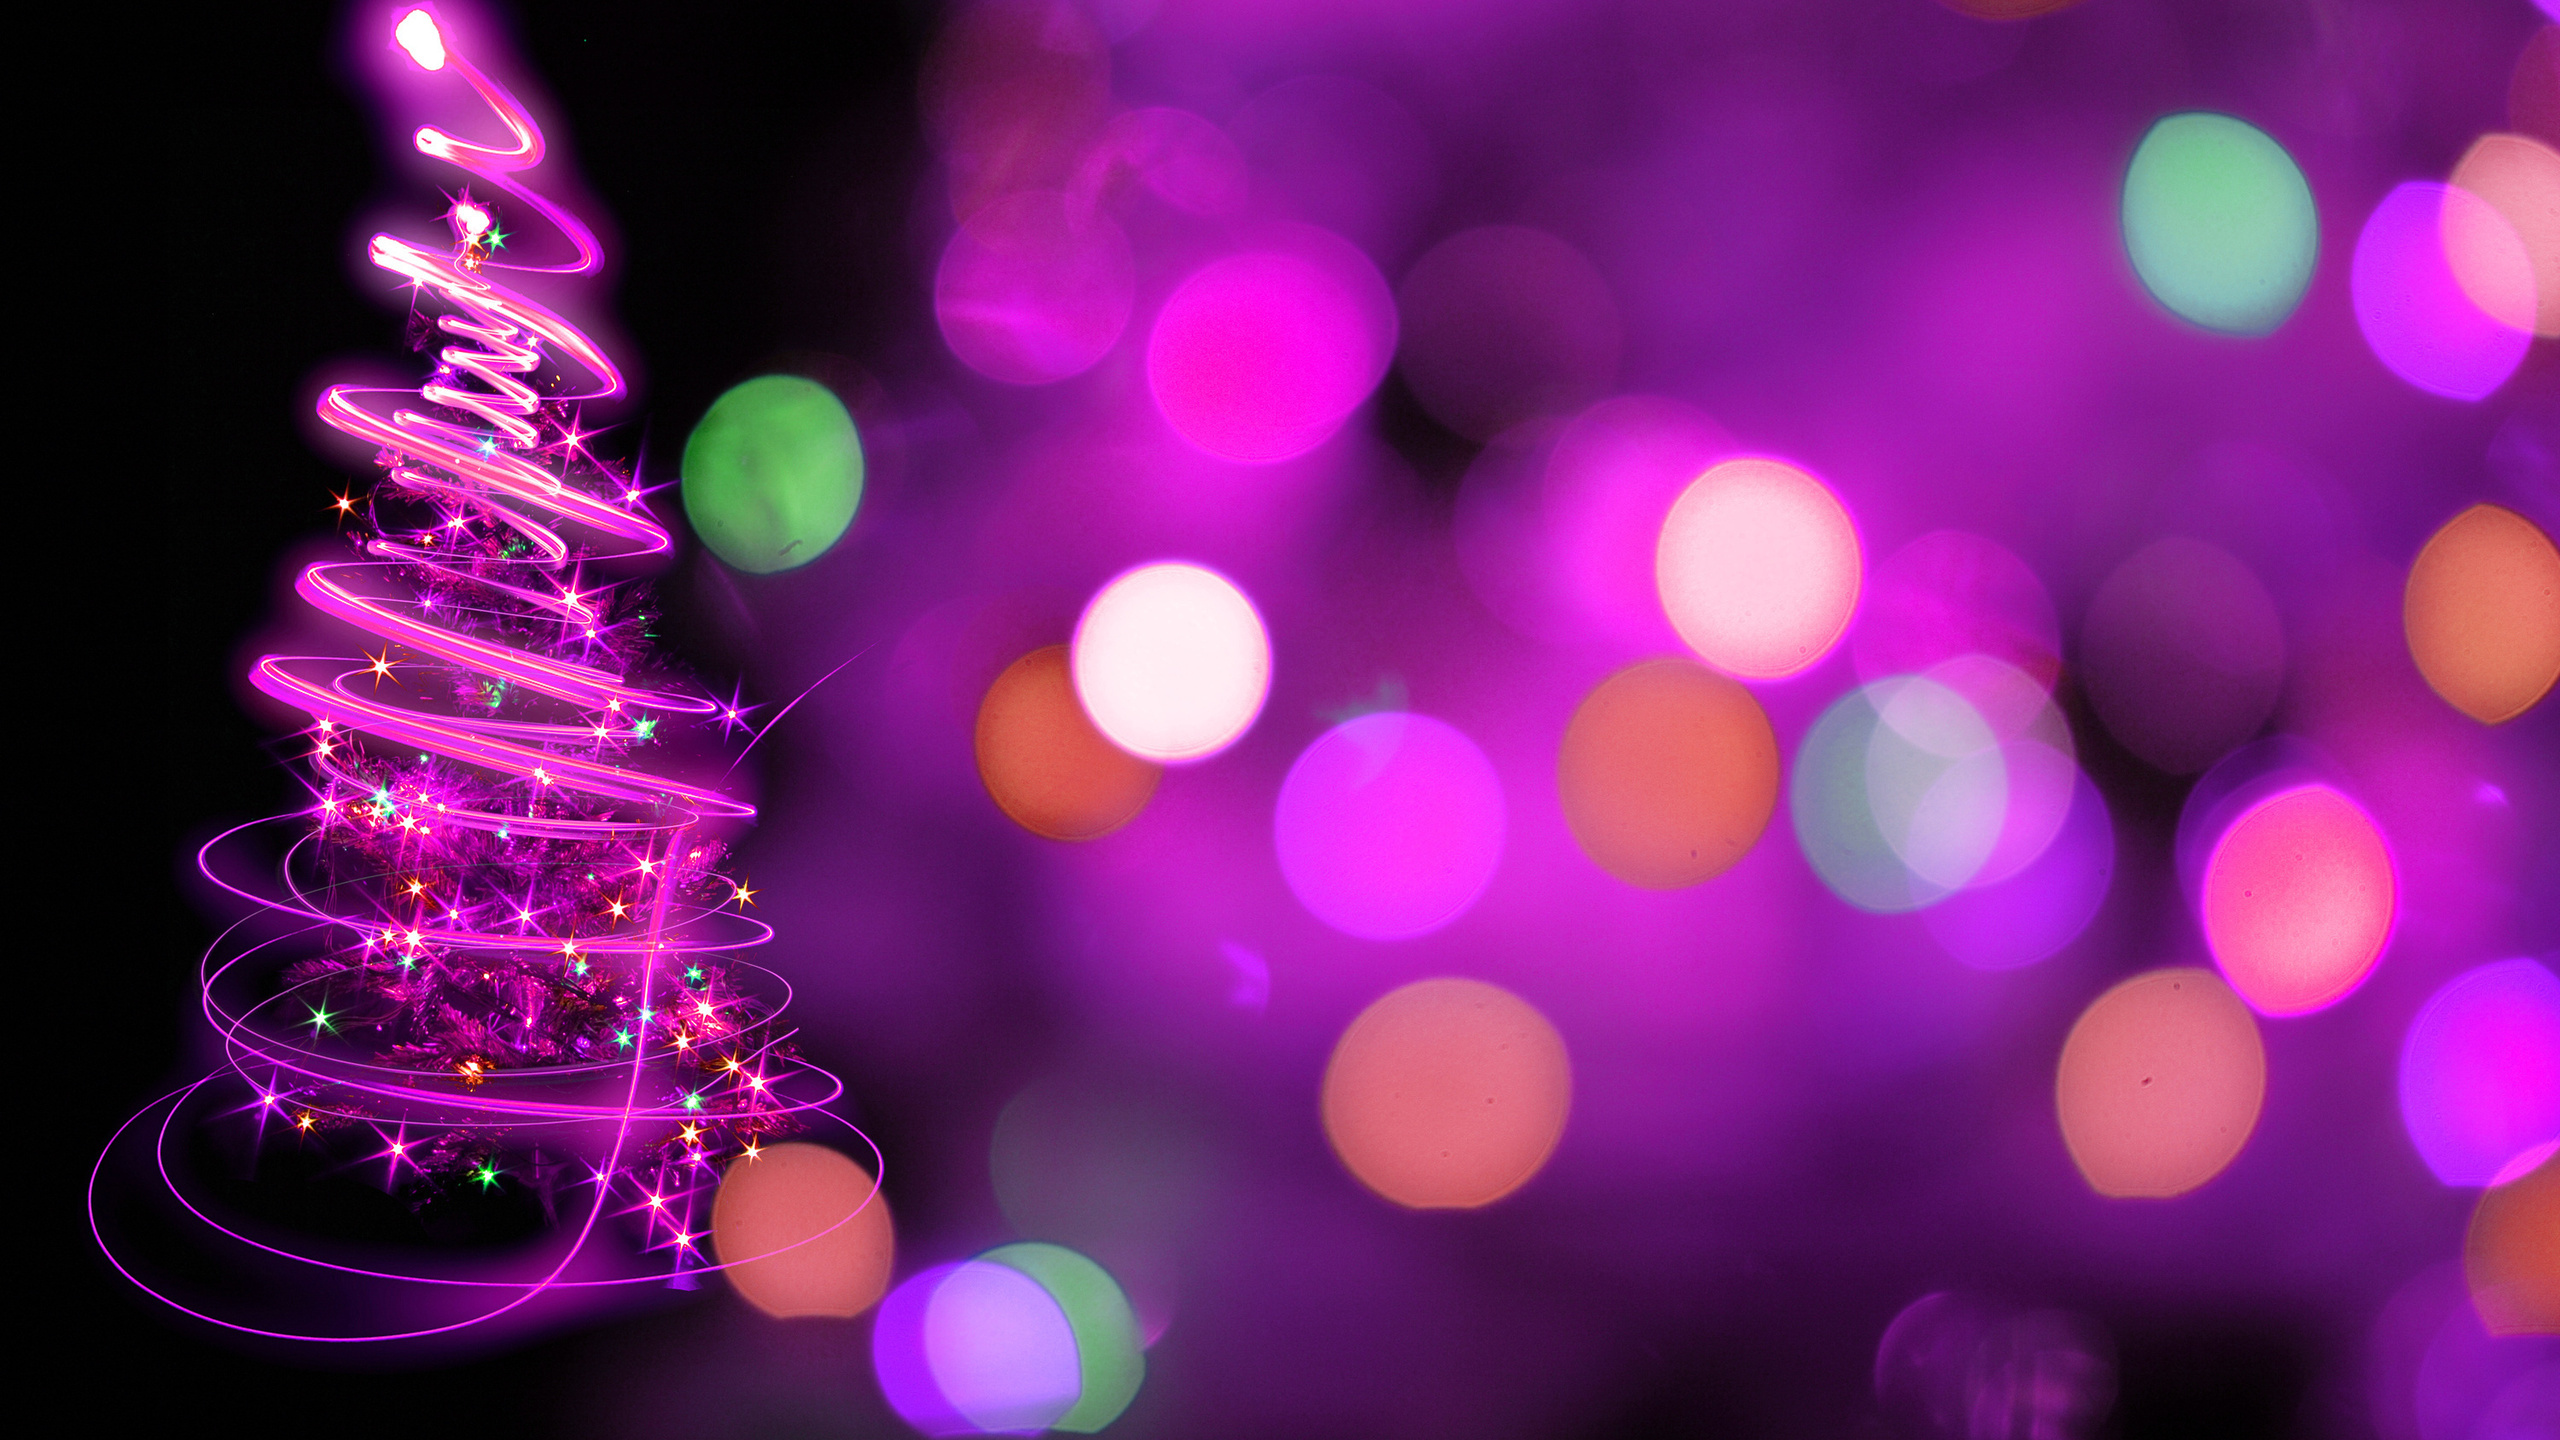 圣诞节那天, 圣诞树, 紫色的, 紫罗兰色, 圣诞装饰 壁纸 2560x1440 允许